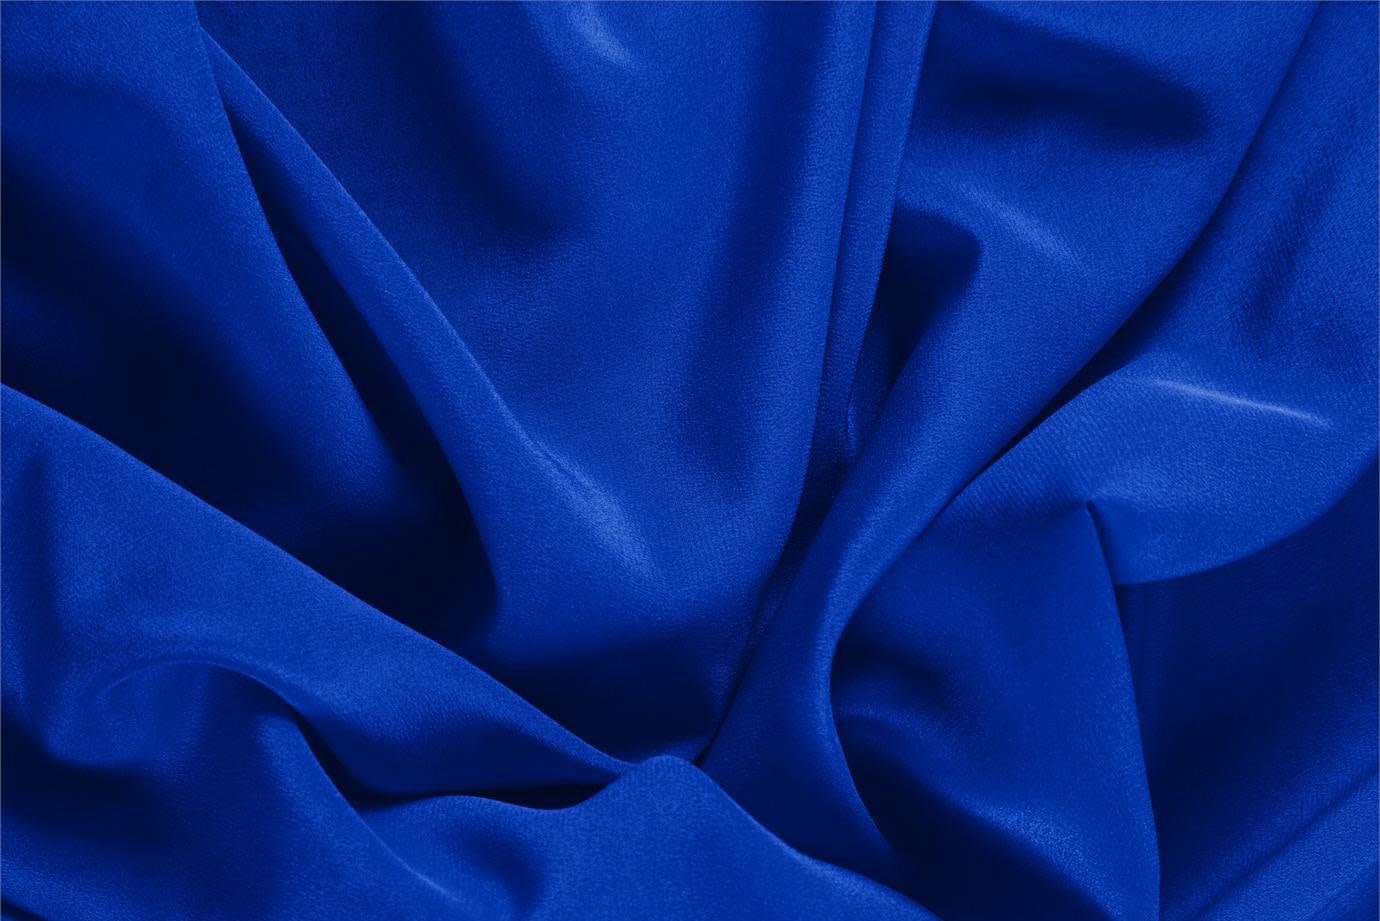 Tessuto Crêpe de Chine Blu Elettrico in Seta per Abbigliamento UN000365